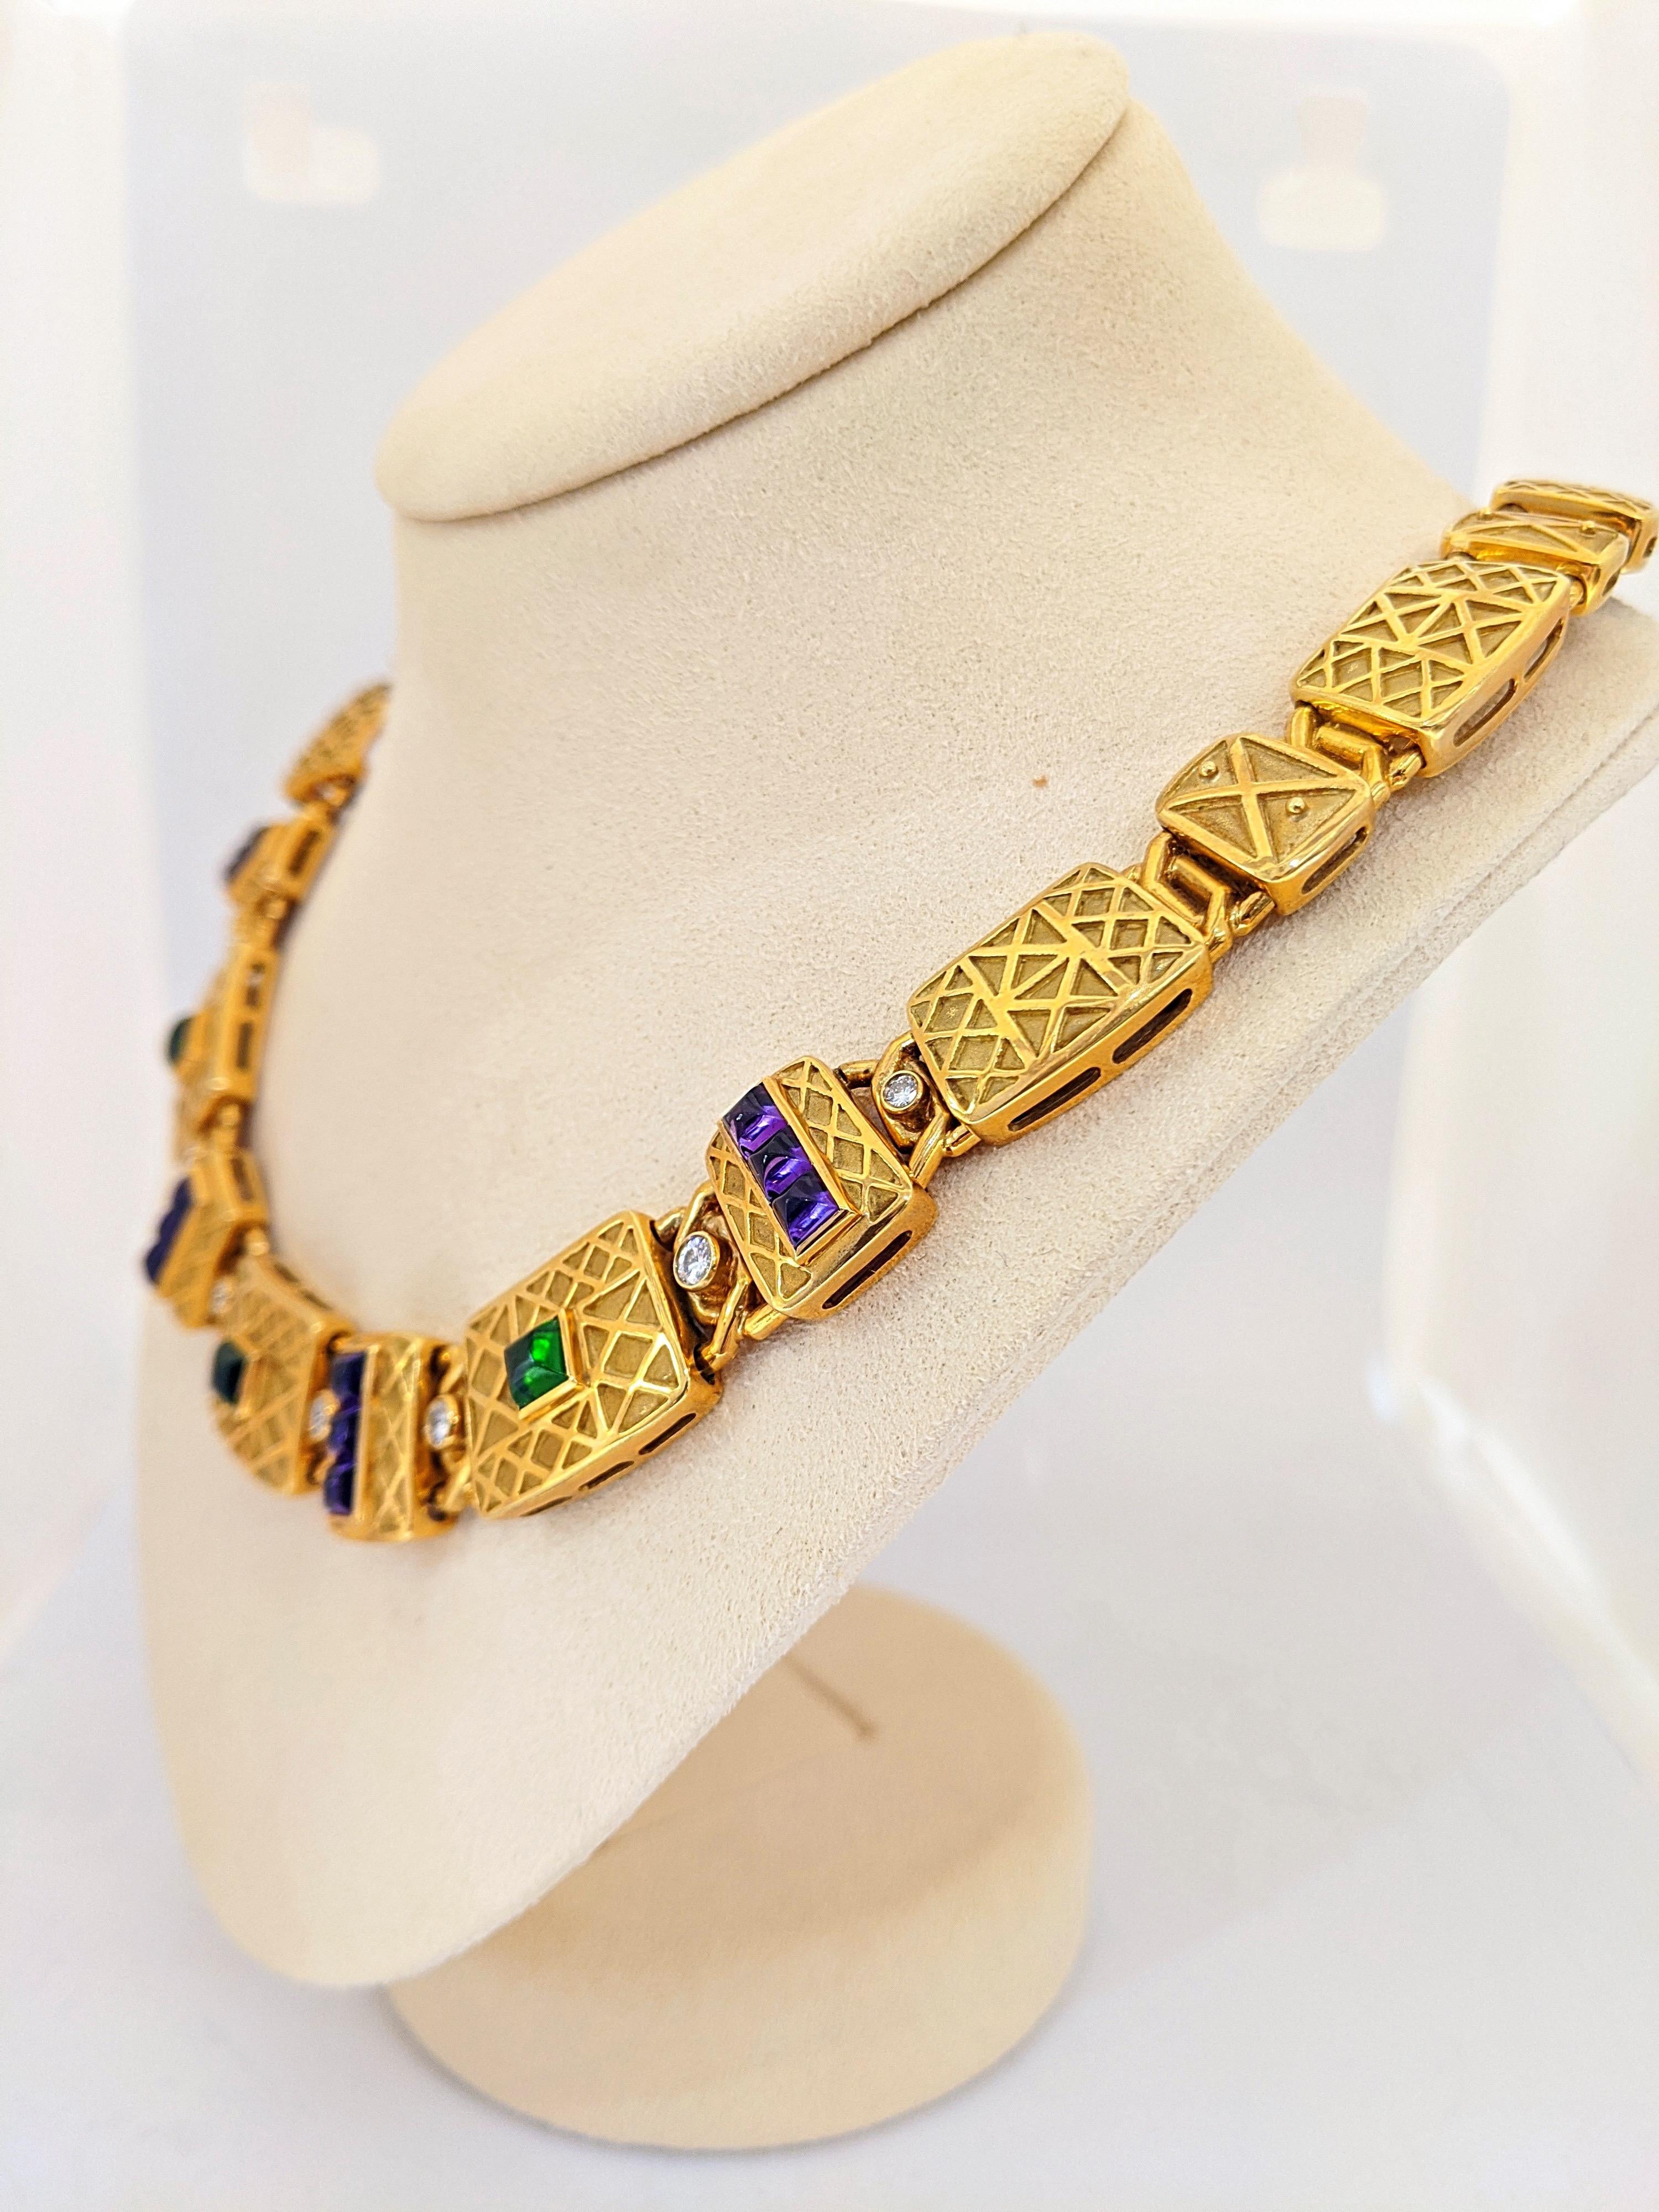 Entworfen von der Firma Charles Turi für Cellini. Diese Halskette aus 18 Karat Gold besteht aus 24 Gelbgoldgliedern mit einem geometrischen Muster. Sie wechseln zwischen groß und klein ab.  Die vorderen 7 Glieder sind mit Zuckerhut-Cabachon-Amethyst